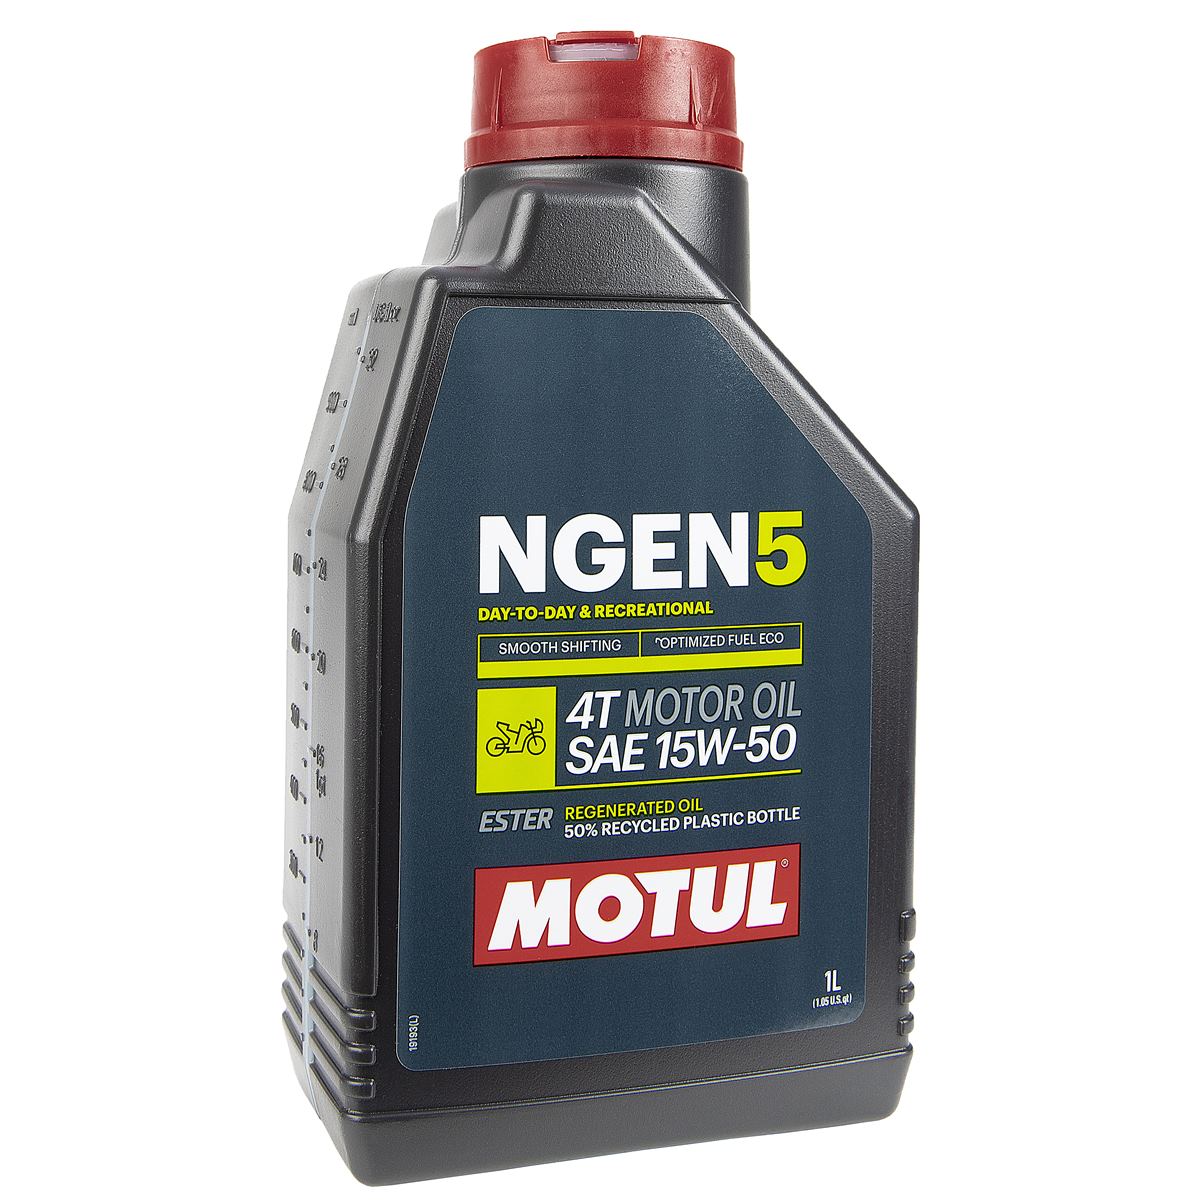 Motul Motor Oil NGEN 5 15W50, 1 Liter